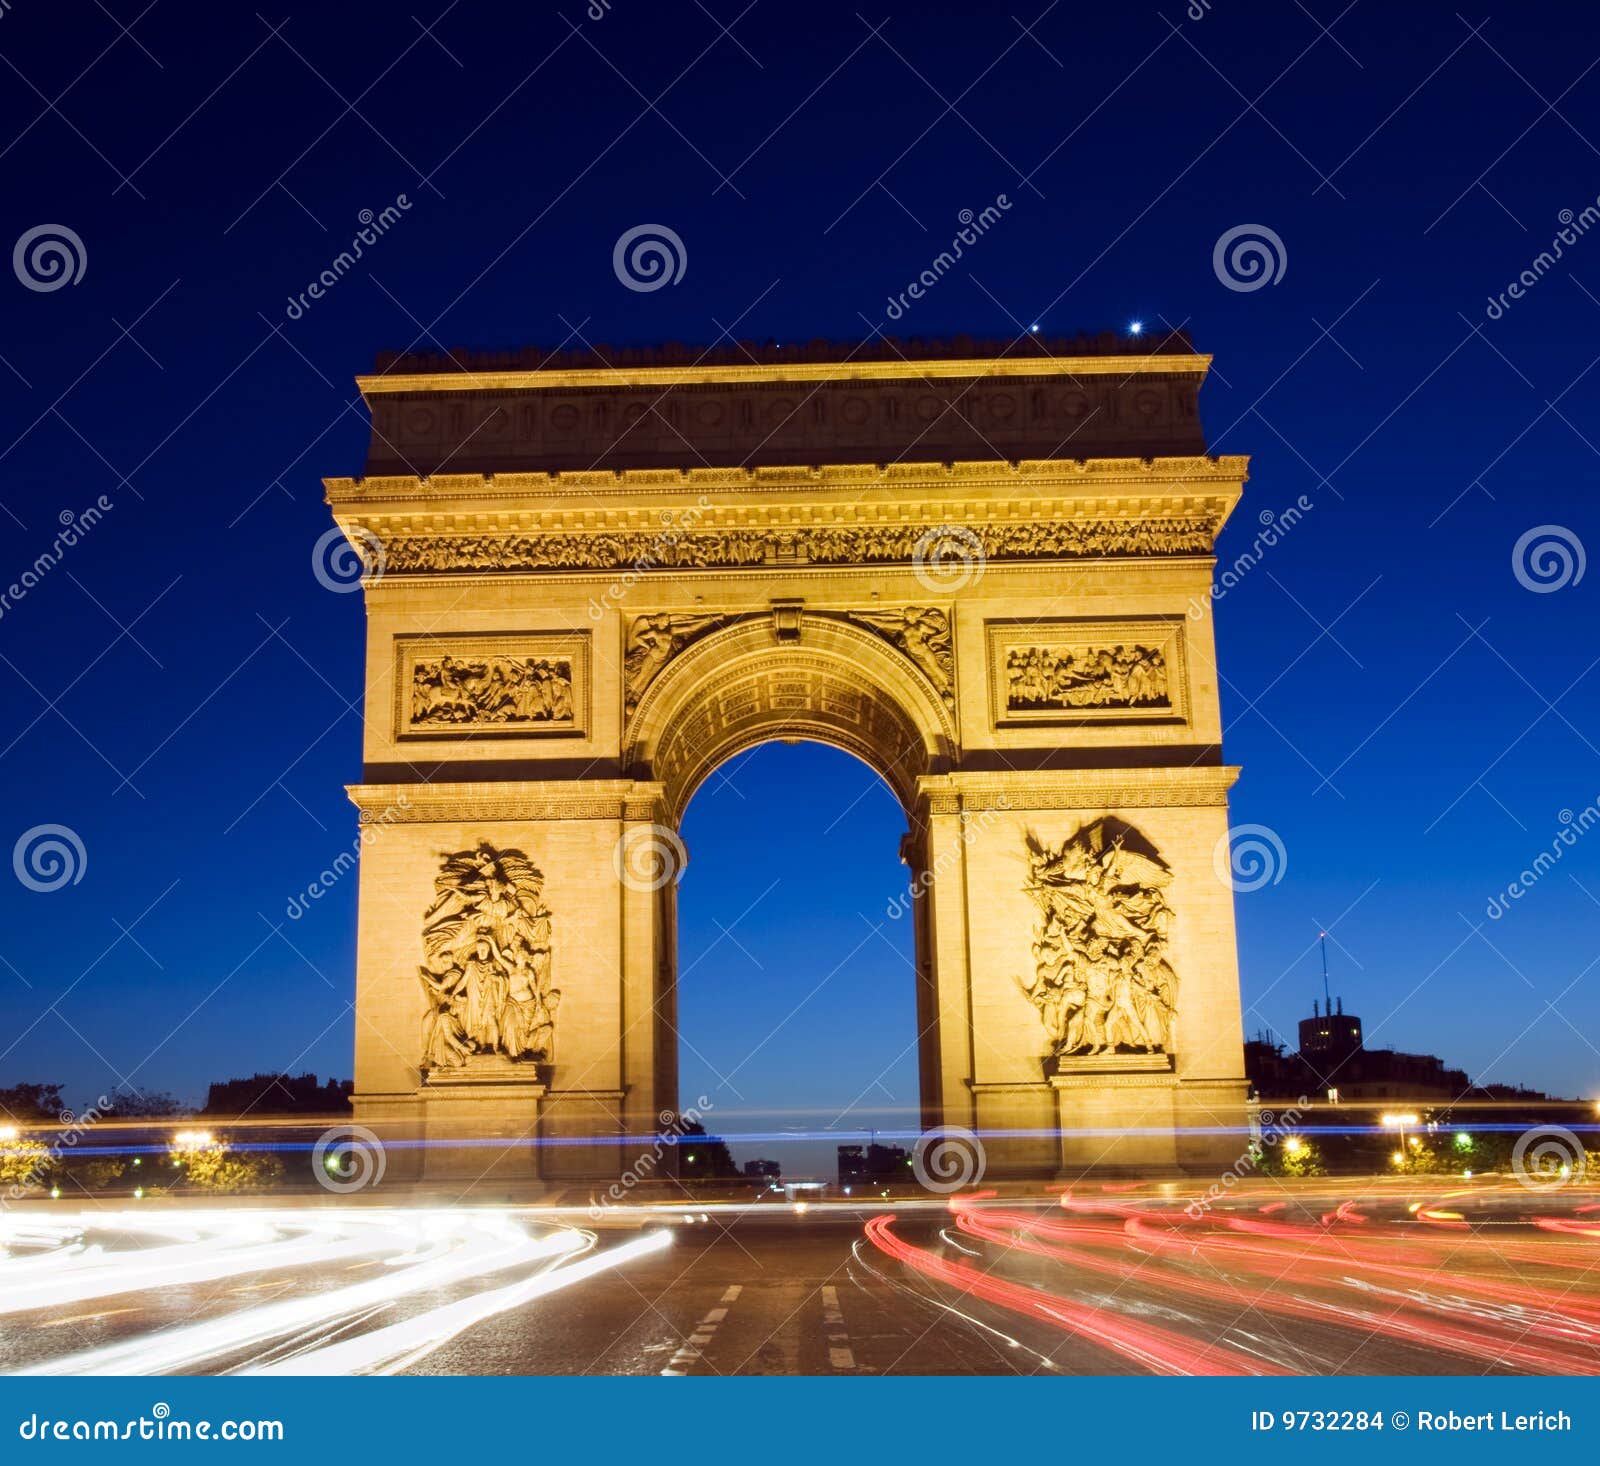 Arc De Triomphe Arch Of Triumph Paris France Stock Photo ...